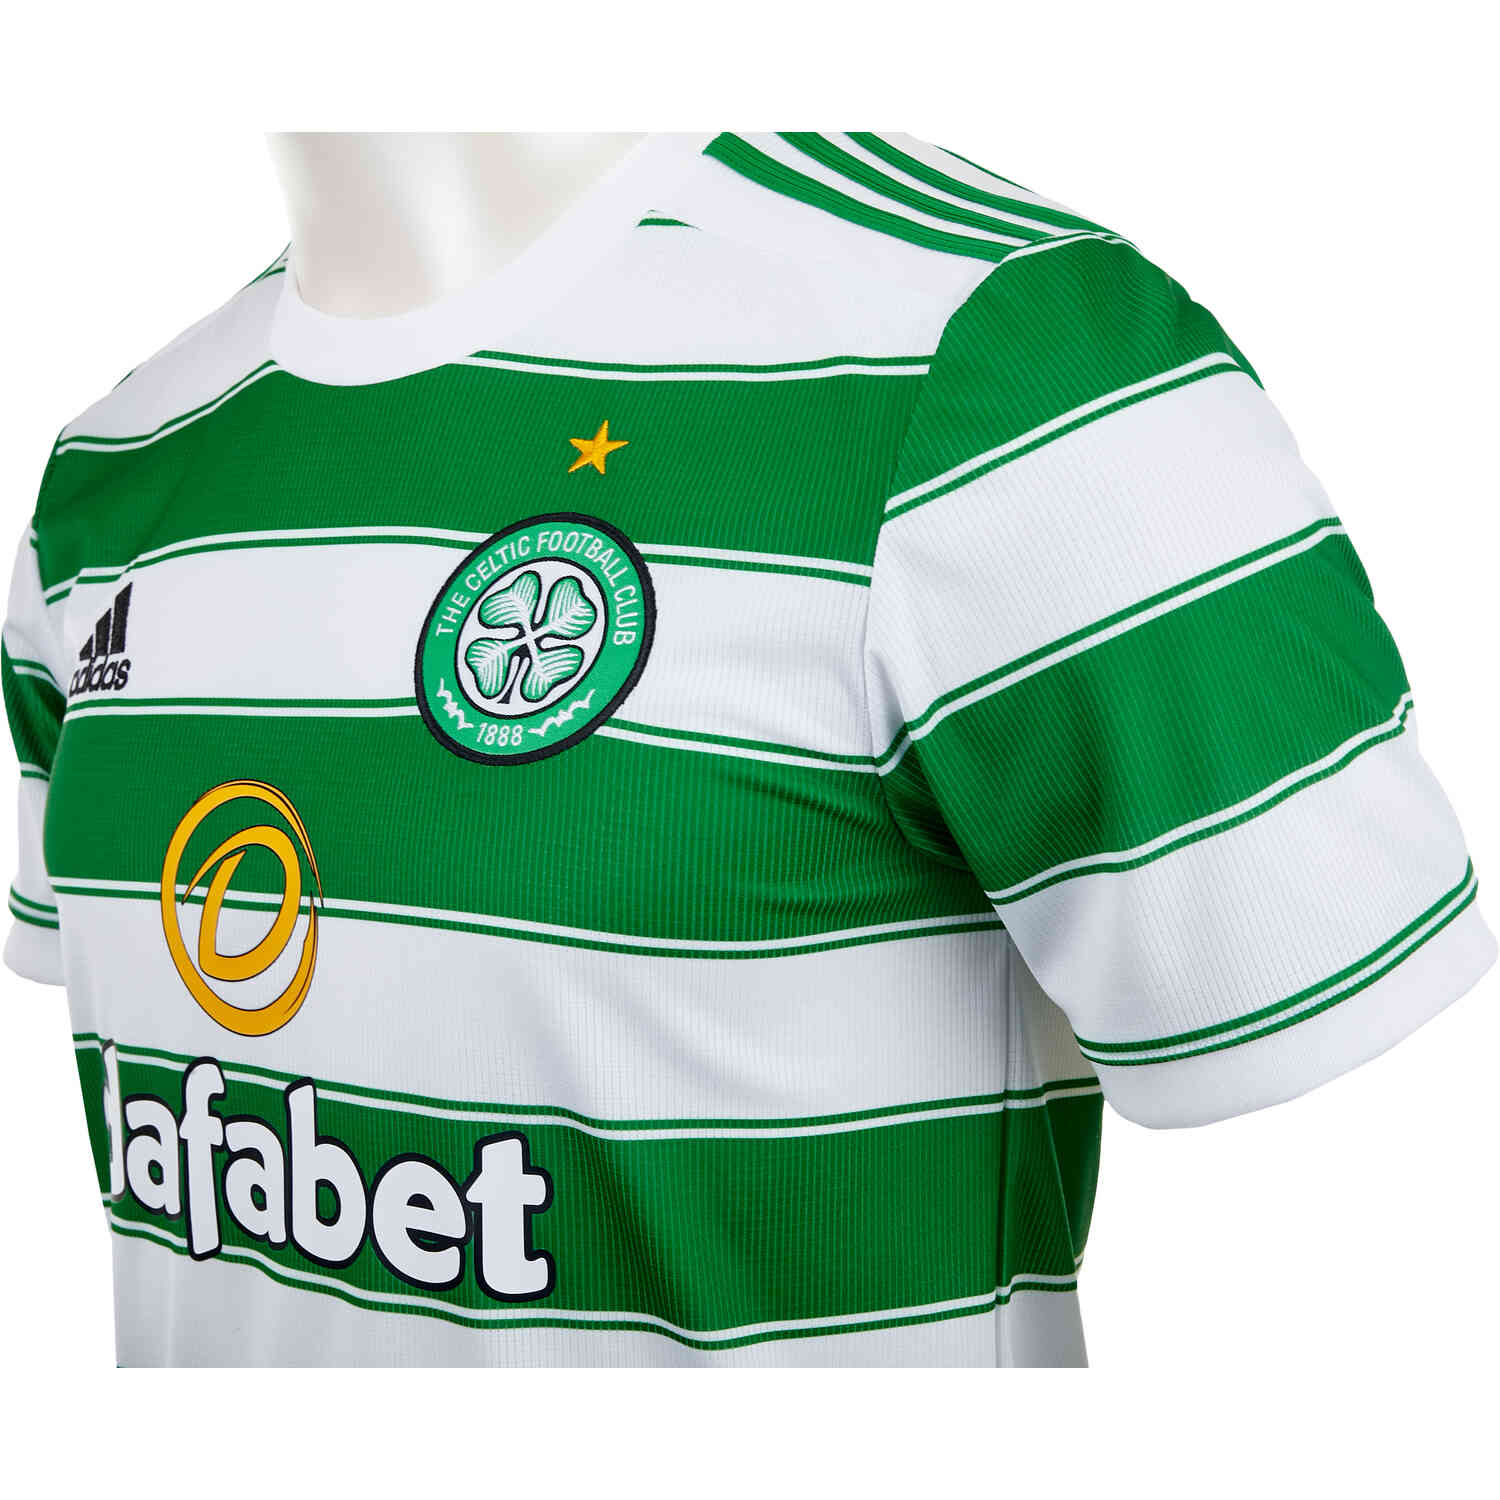 NEW 2020-2021 Celtics Home Soccer Jersey Short Sleeve Men's Football Shirt S-XXL 